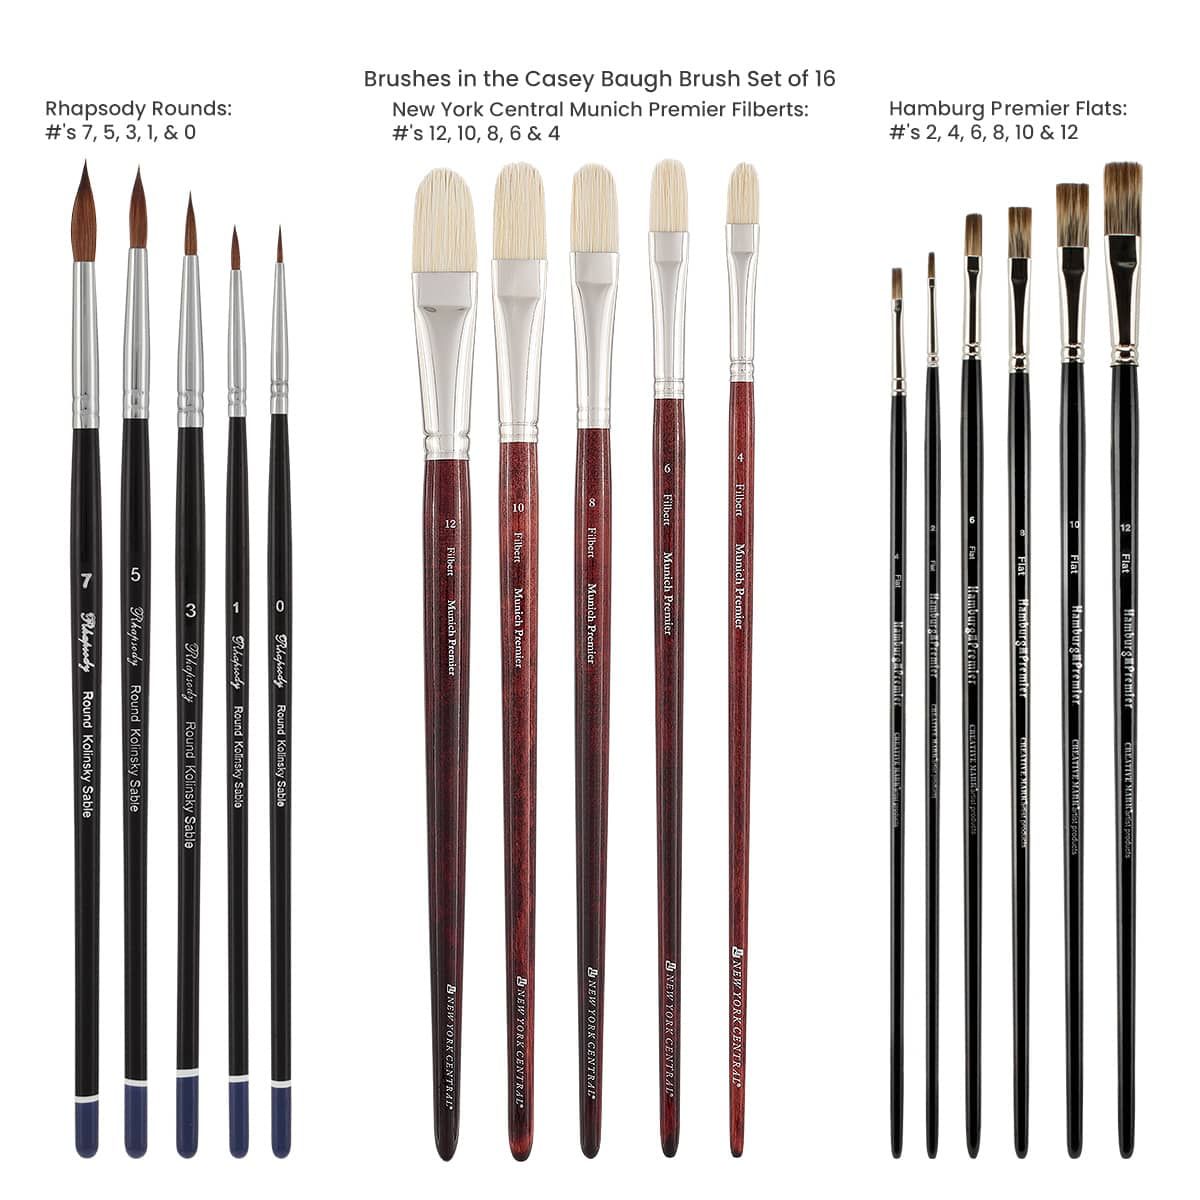 Casey Baugh Brush Set of 16 Mixed Brushes
